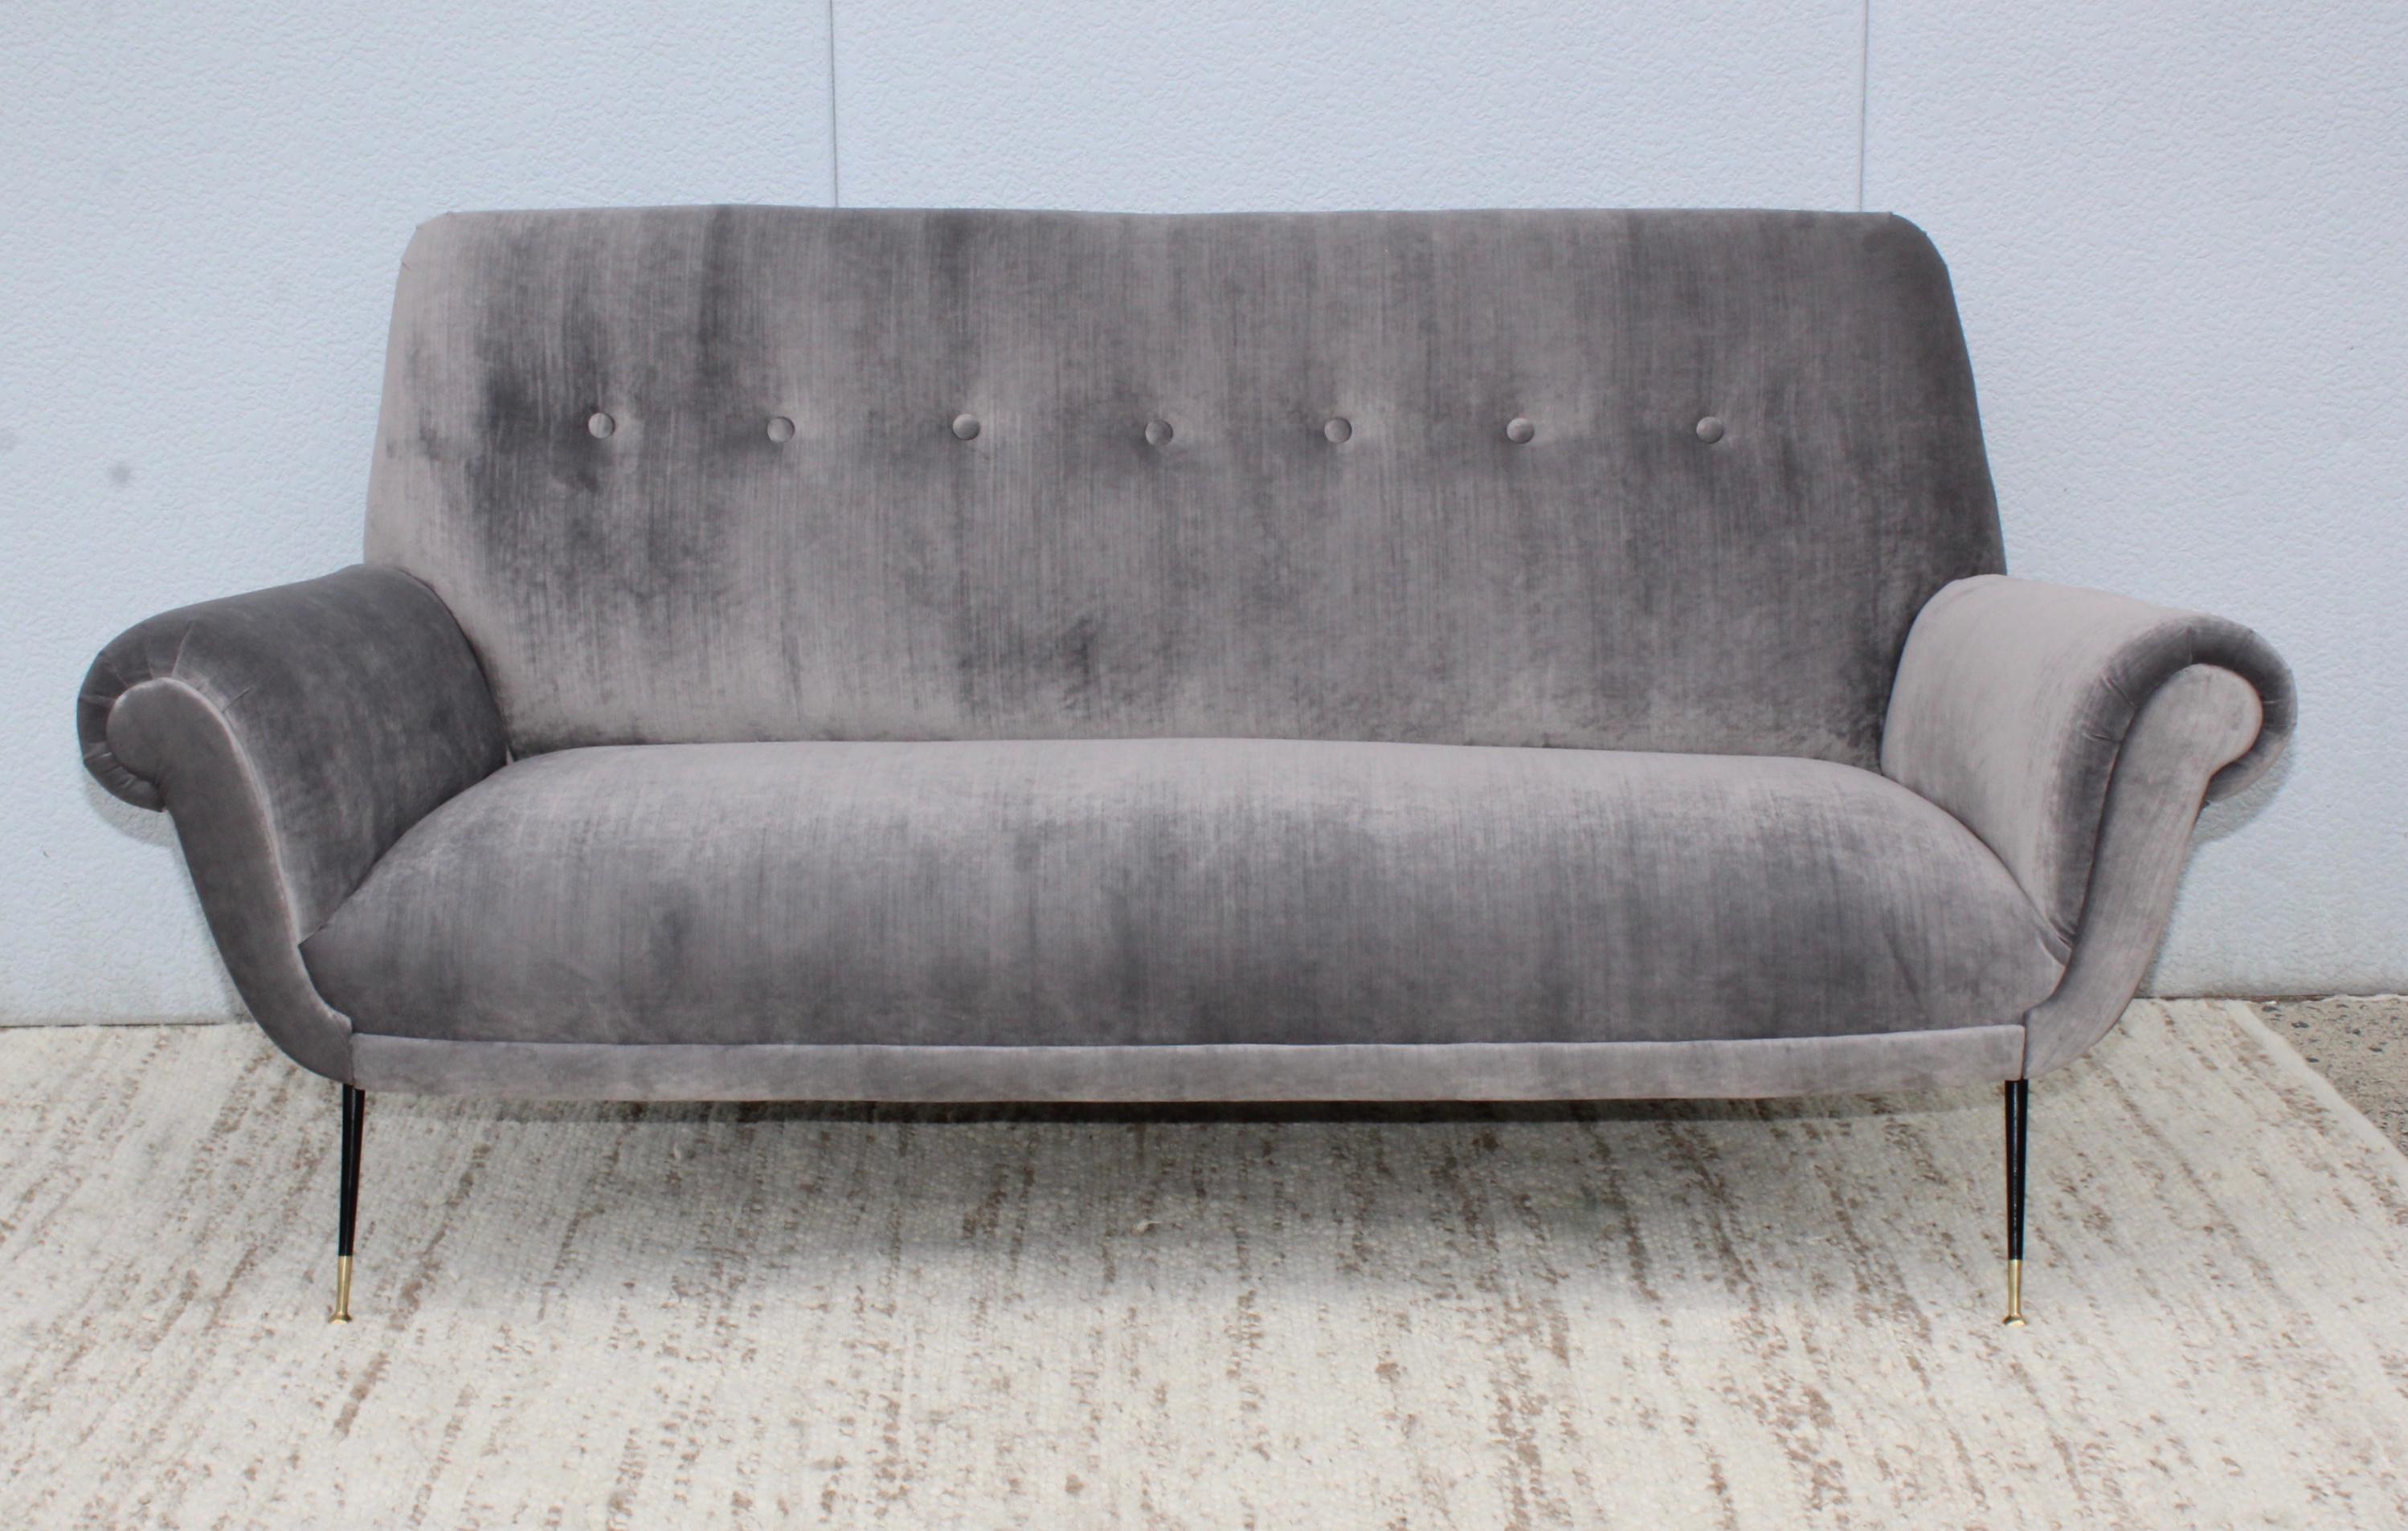 1950s Gigi Radice sofa fully restored and reupholstered in gray velvet.